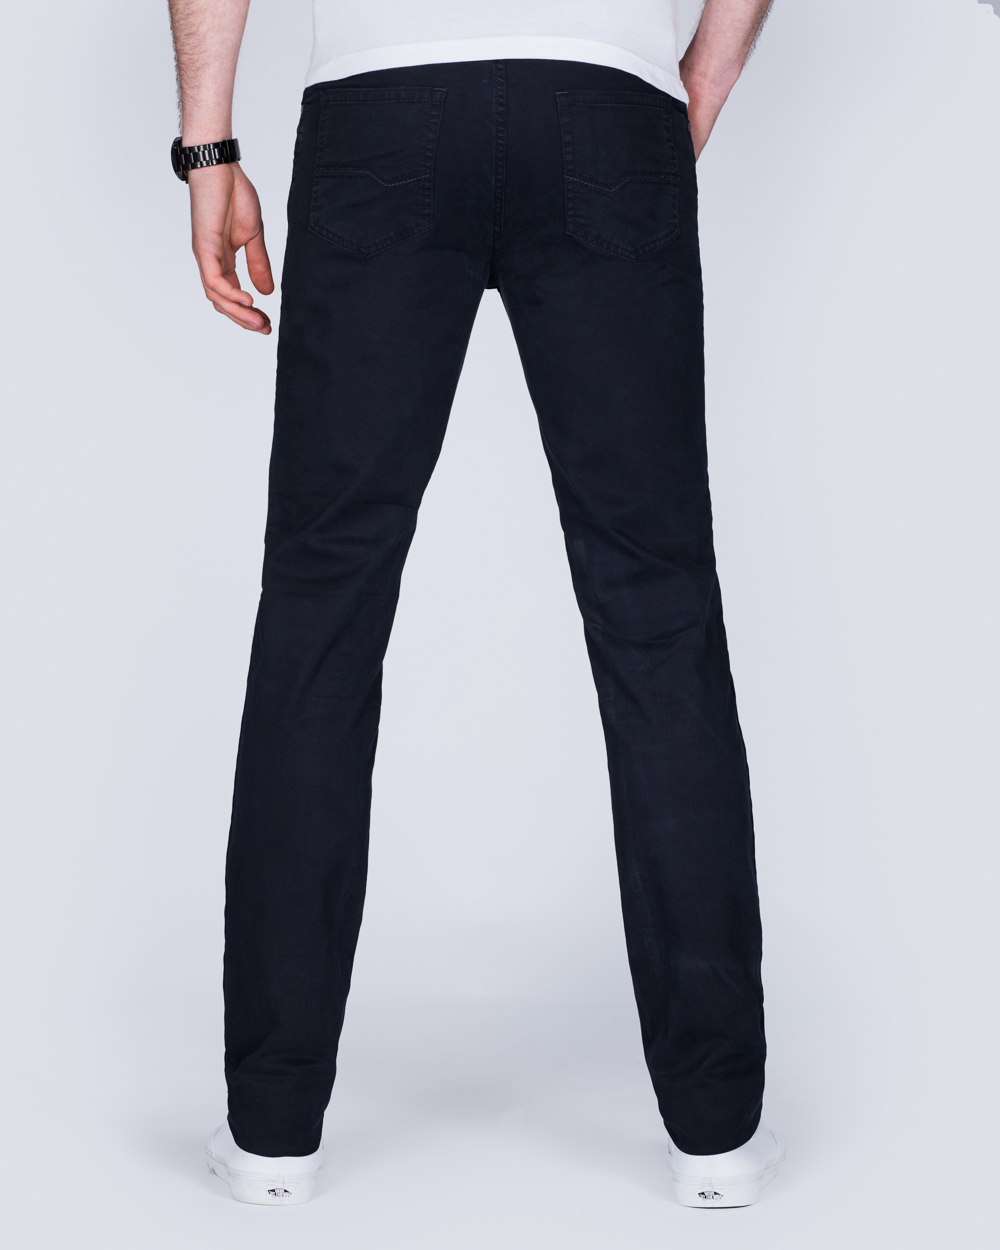 Redpoint Milton Slim Fit Tall Jeans (dark indigo) | 2tall.com